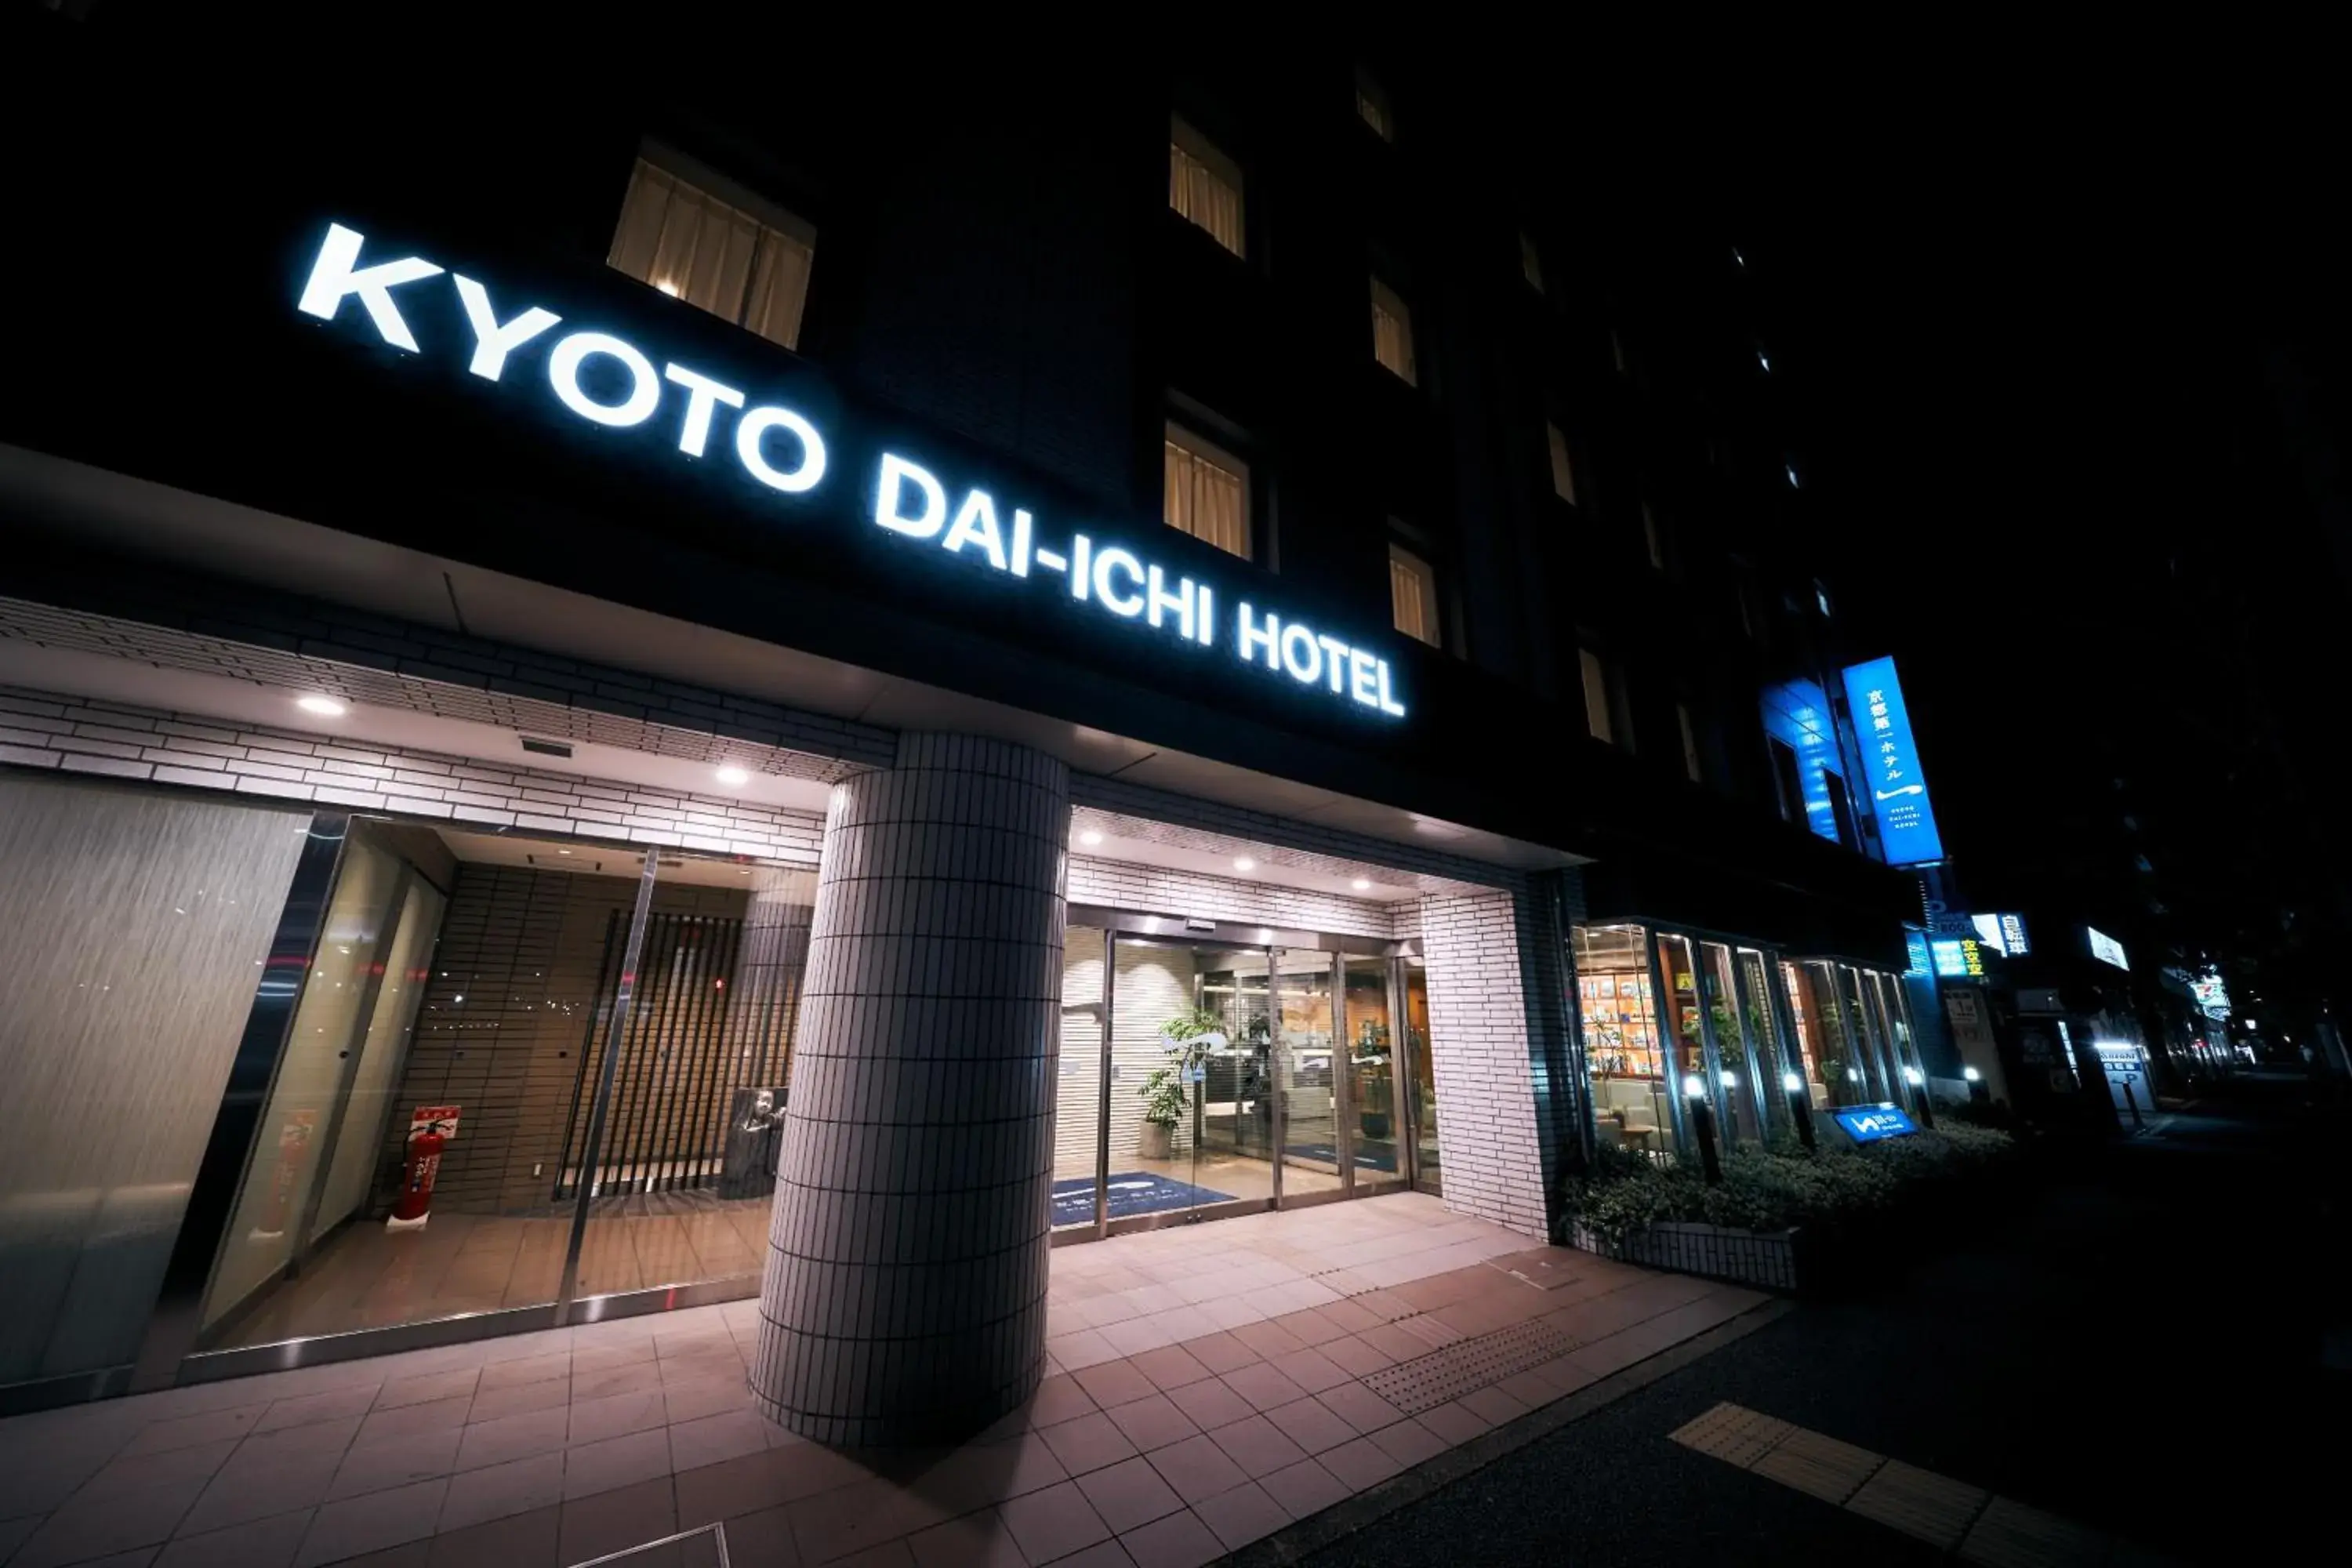 Property building in Kyoto Daiichi Hotel